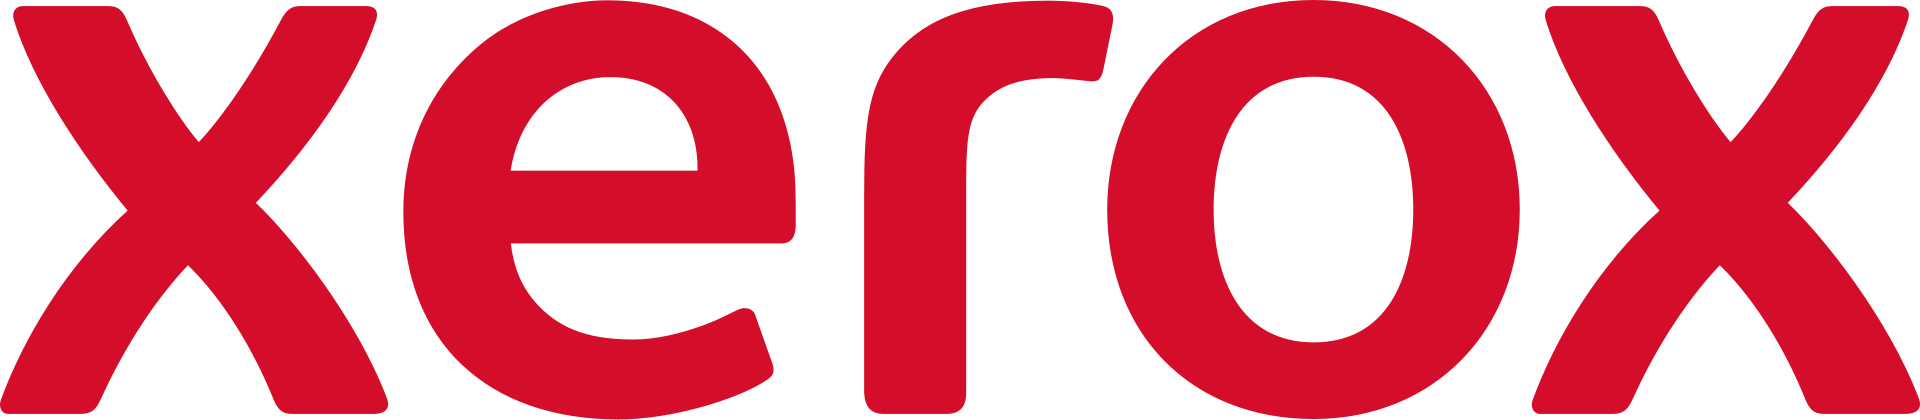 Xerox Brand Logo